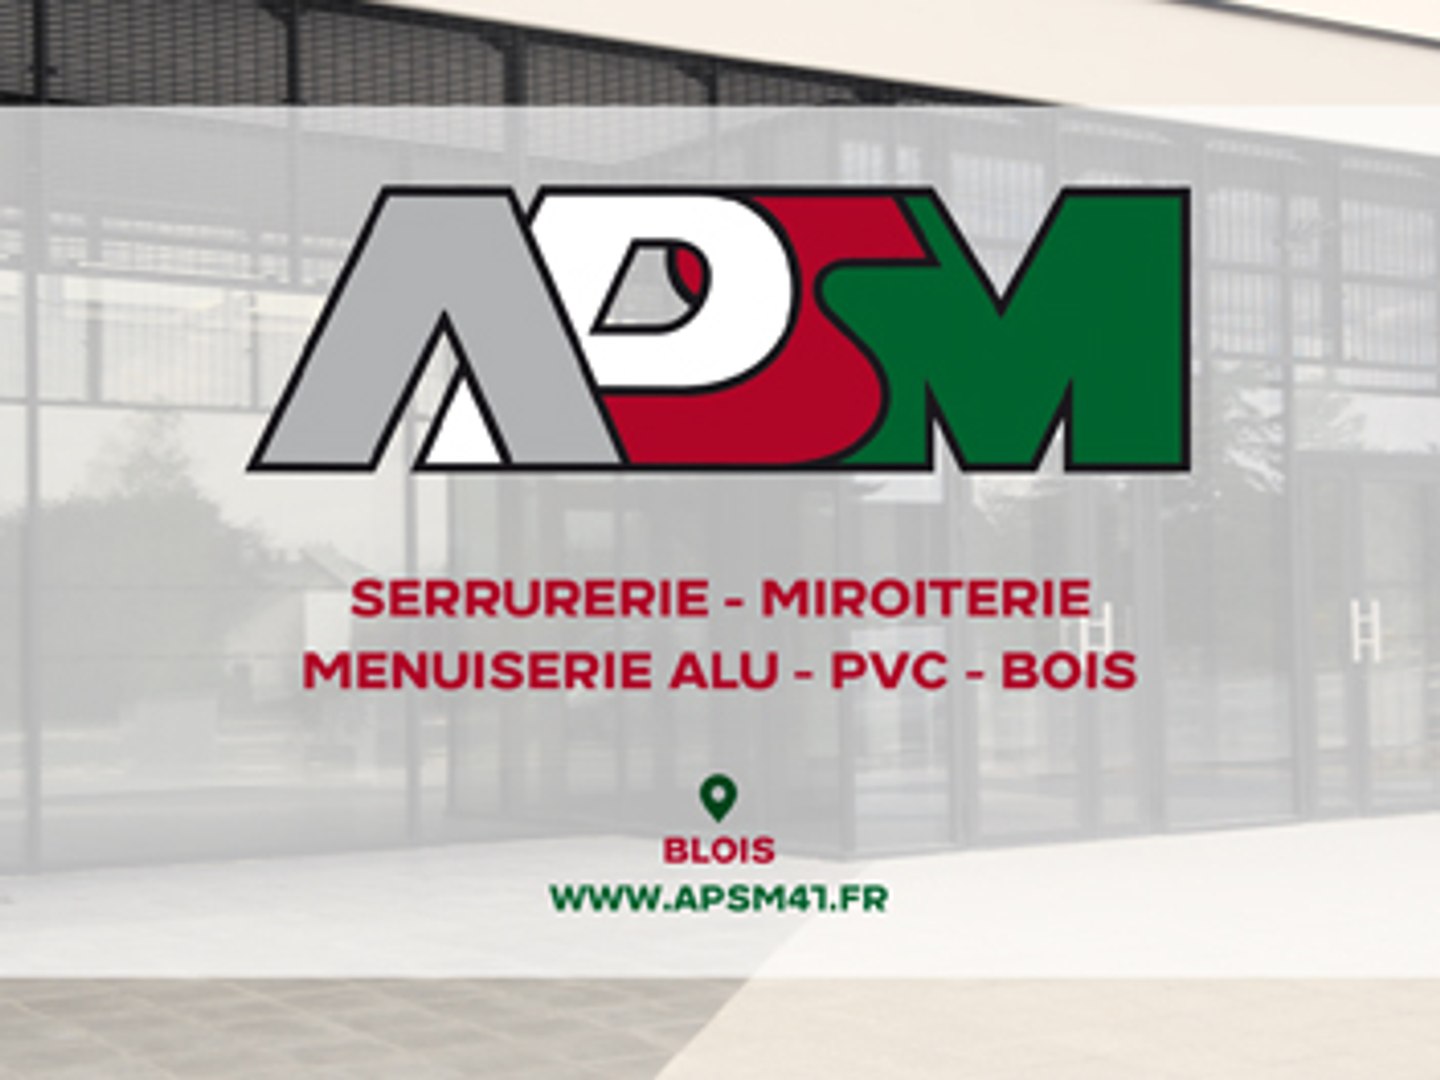 APSM, serrurerie, miroiterie, menuiserie alu, PVC et bois à Blois. - Vidéo  Dailymotion